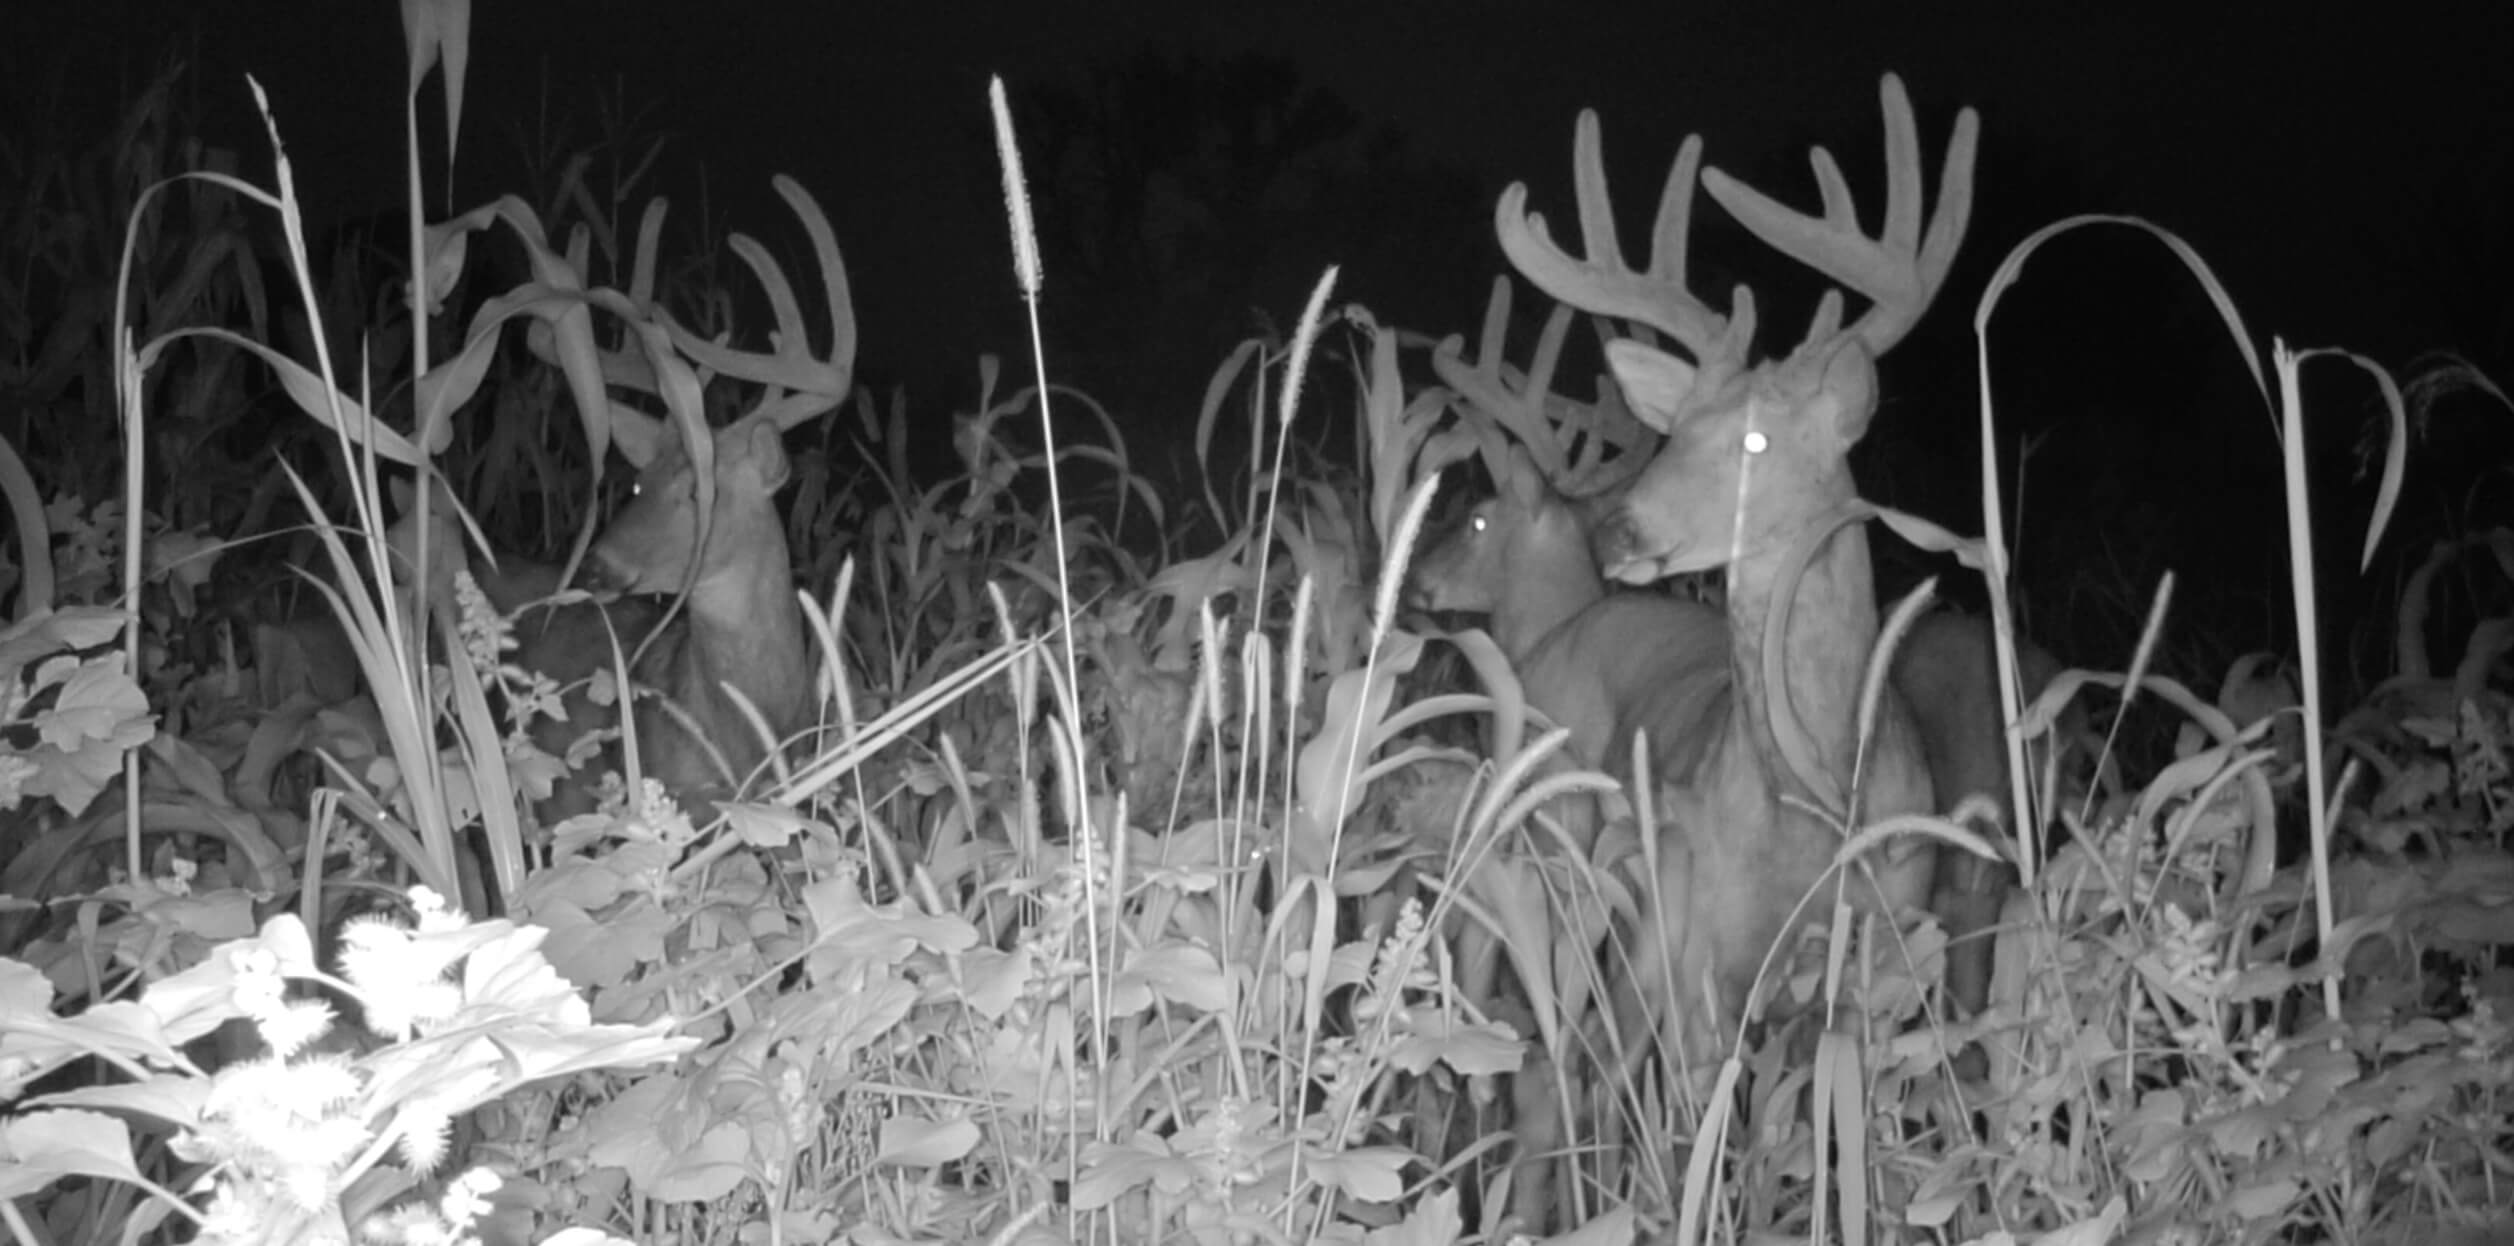 Night vision image of deer in field